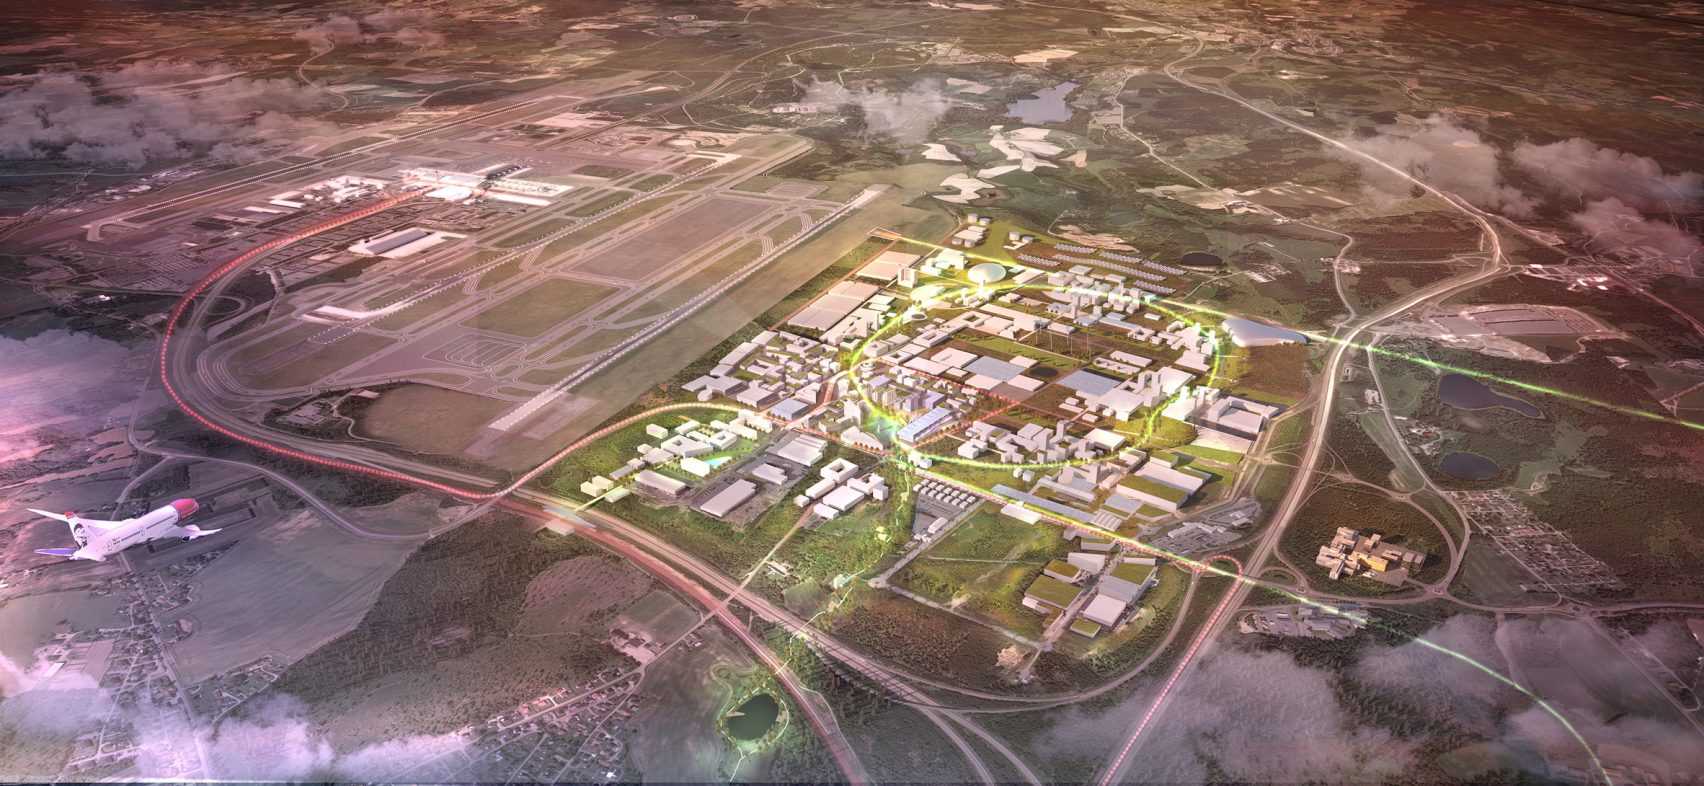  Az oslói repülőtér a jövő fenntartható városává válik